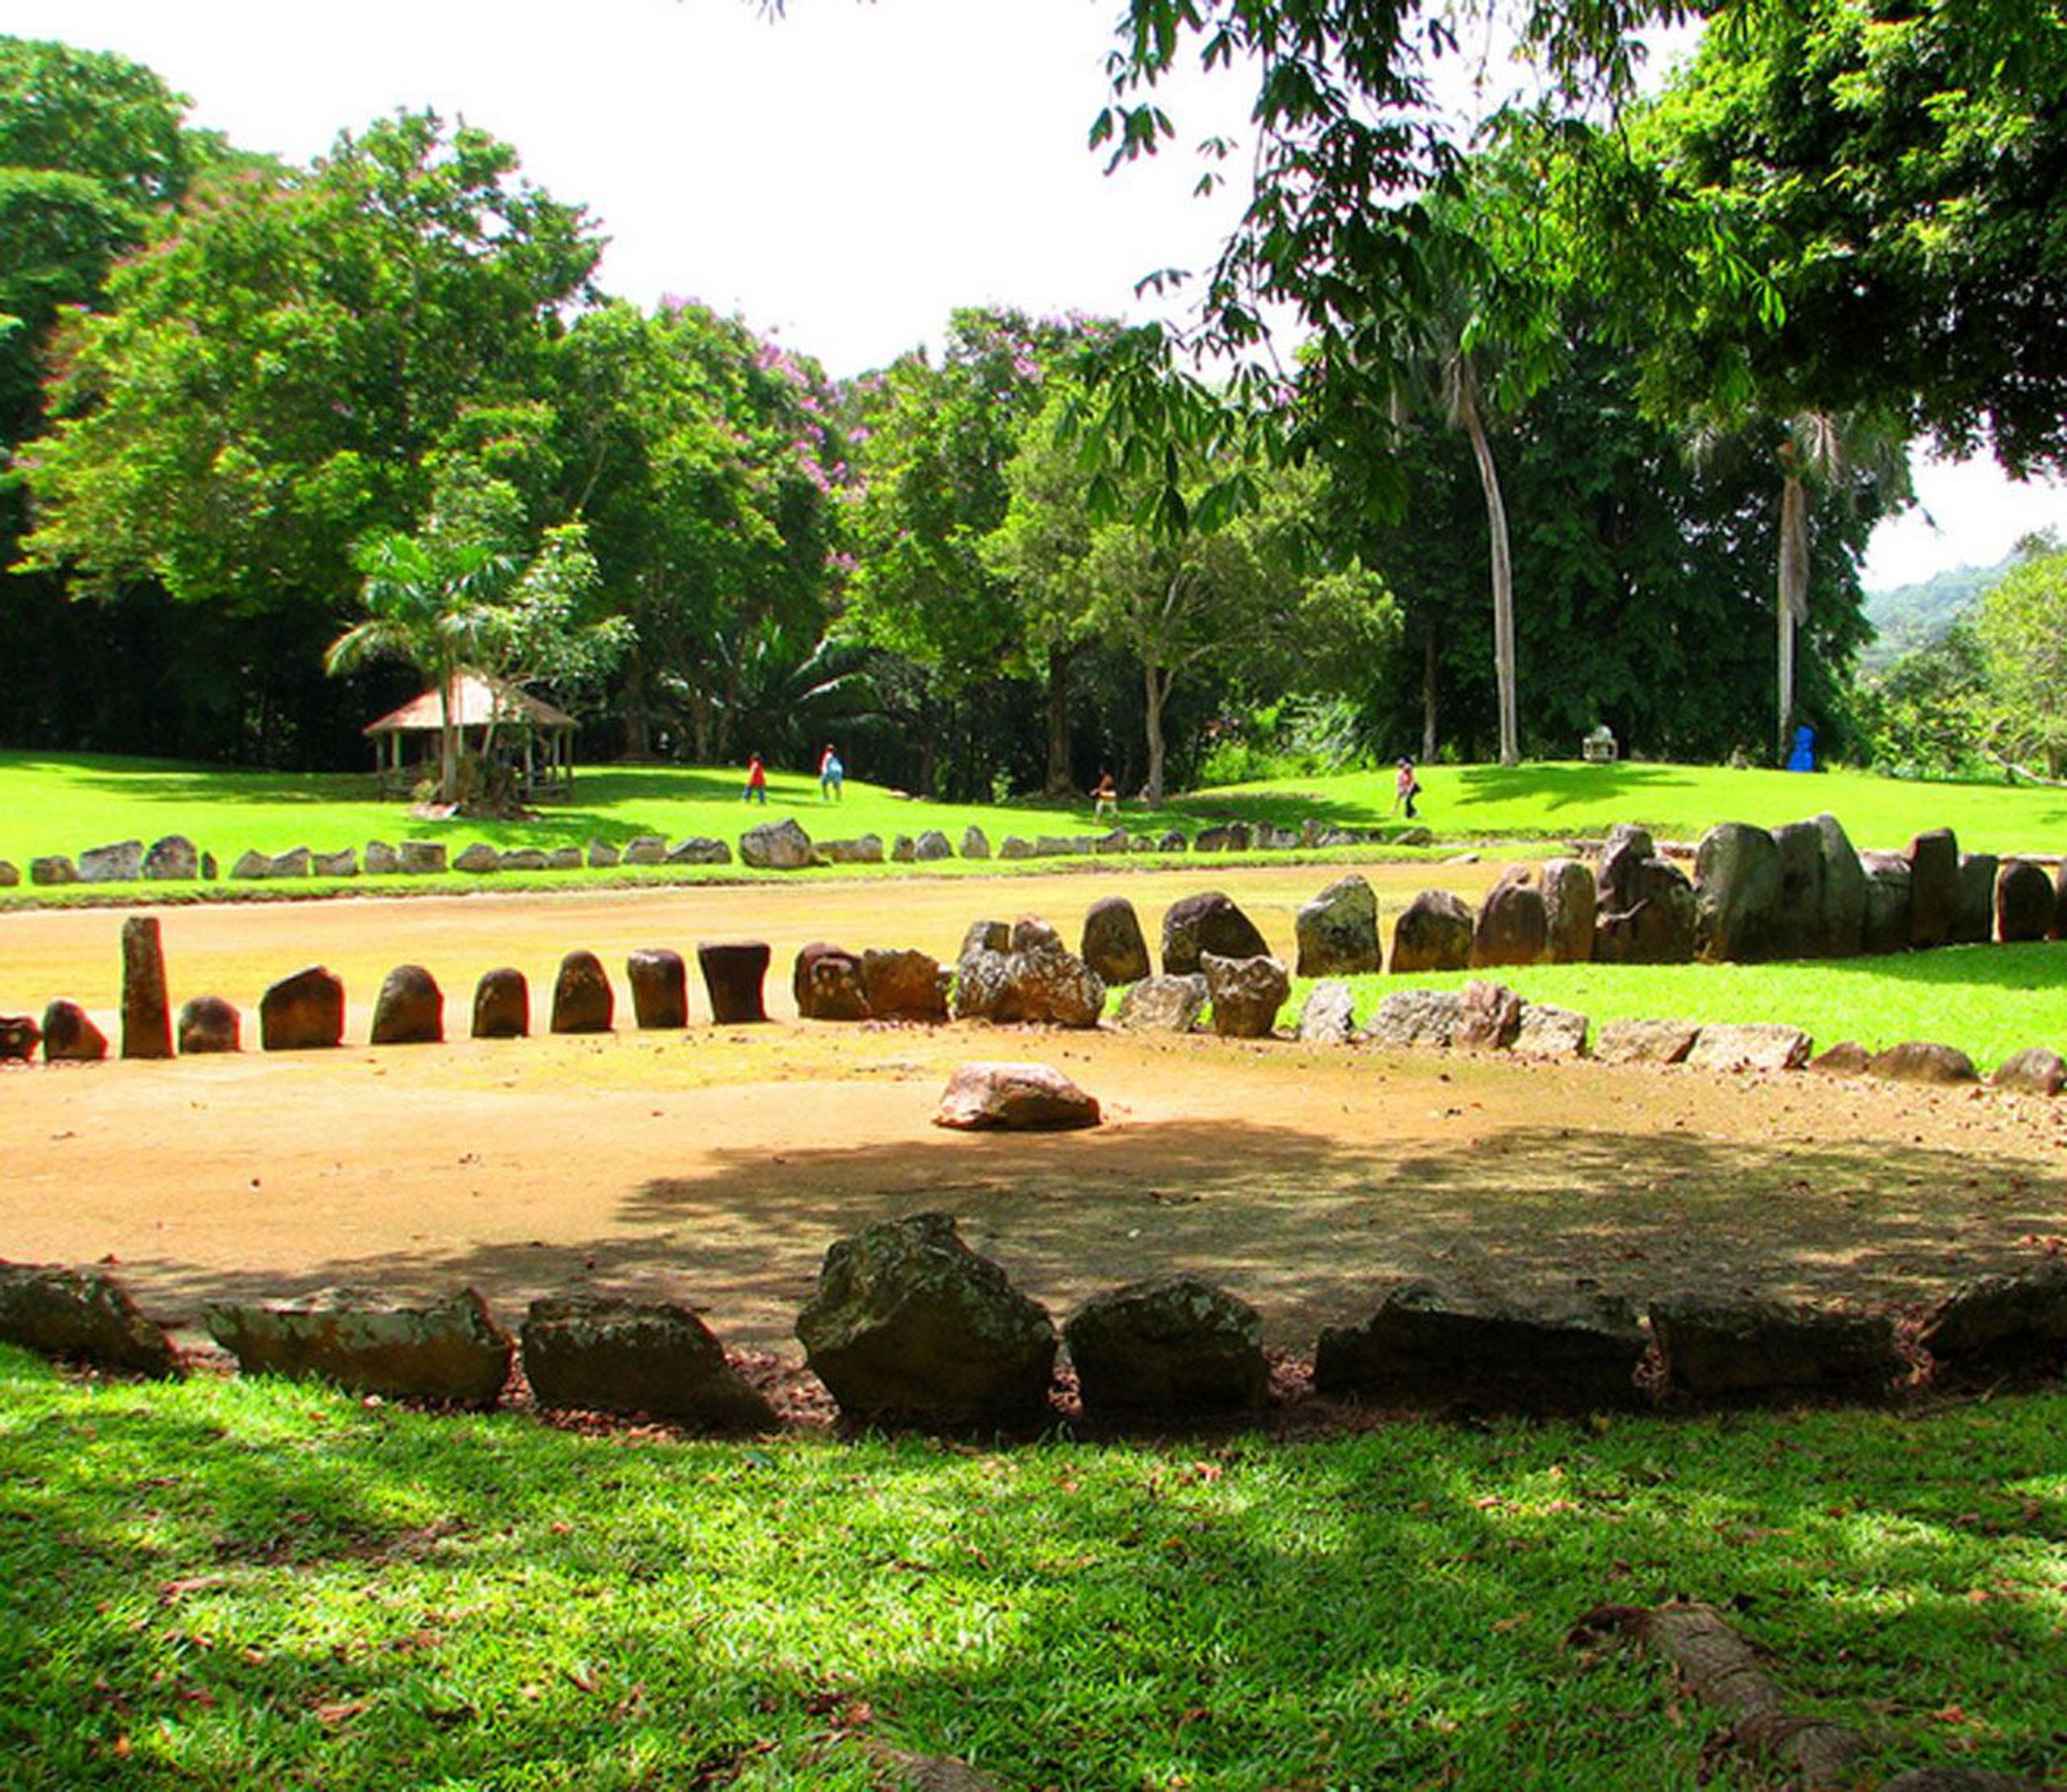 El Parque Ceremonial Indígena de Caguana es considerado, hasta el momento, el yacimiento arqueológico más importante de Puerto Rico. ( Captura de Flick)